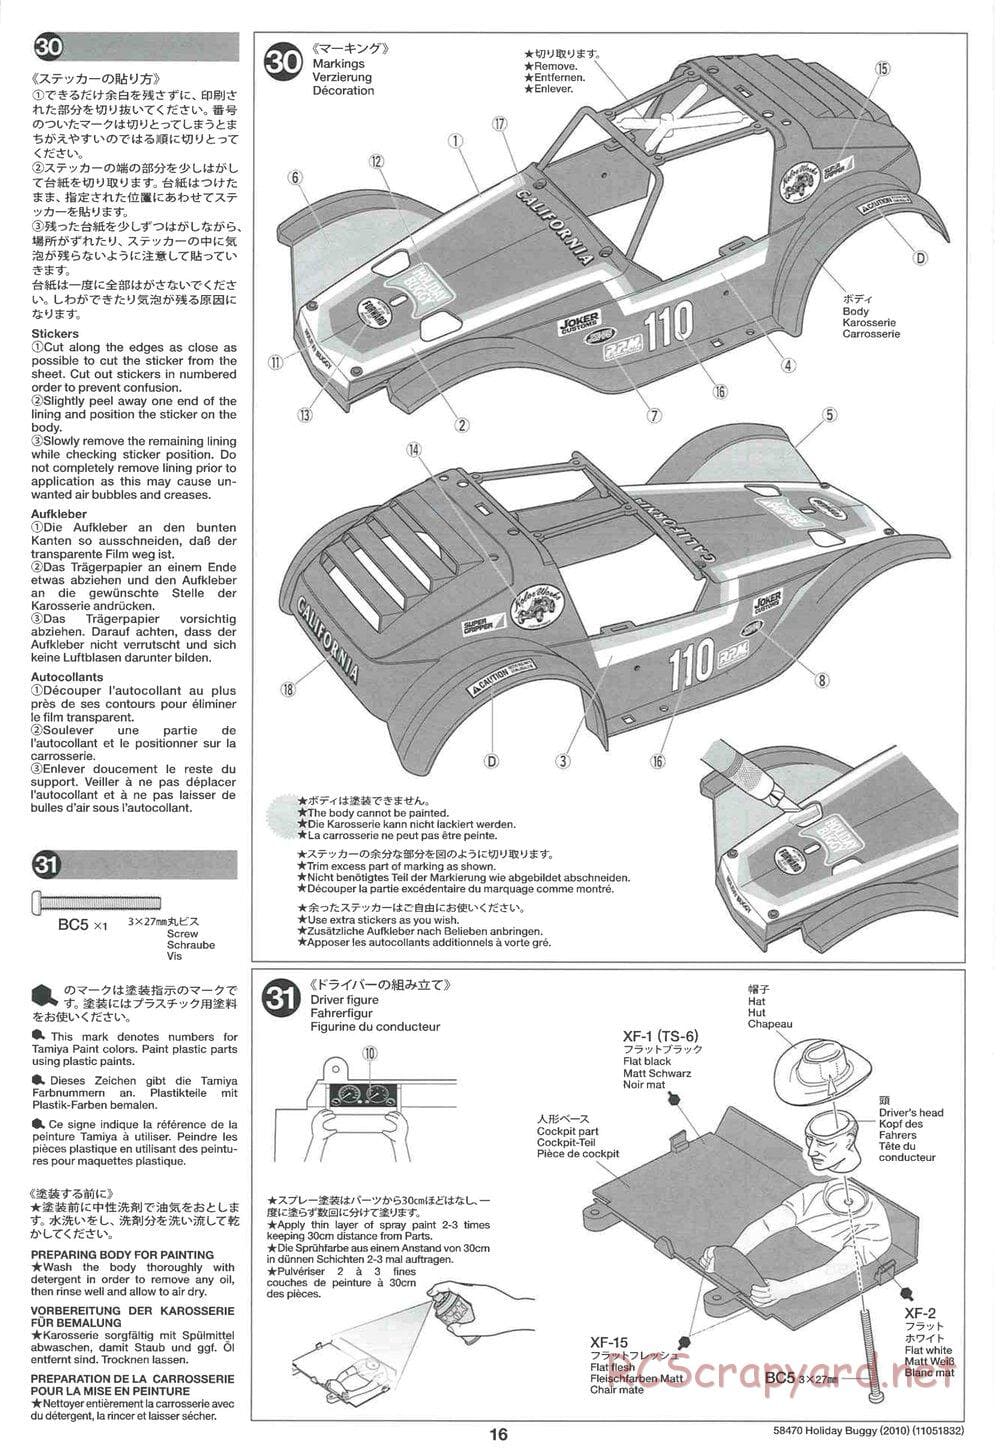 Tamiya - Holiday Buggy 2010 Chassis - Manual - Page 16